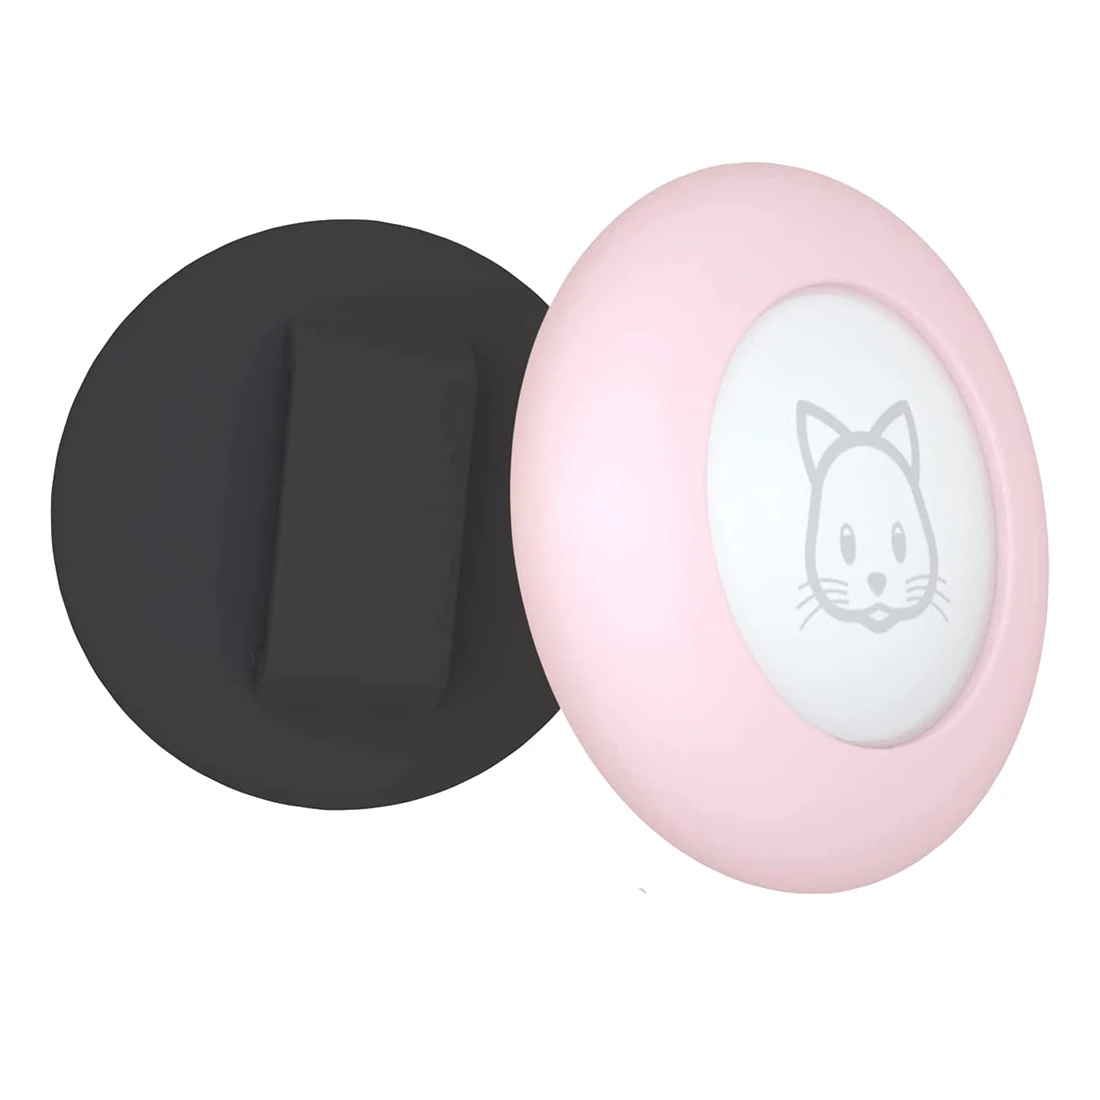 

Держатель для ошейника для кошки, держатель для ошейника для кошки, совместимый с GPS-трекером Apple Airtag, 2 шт. в упаковке, цвет черный и розовый